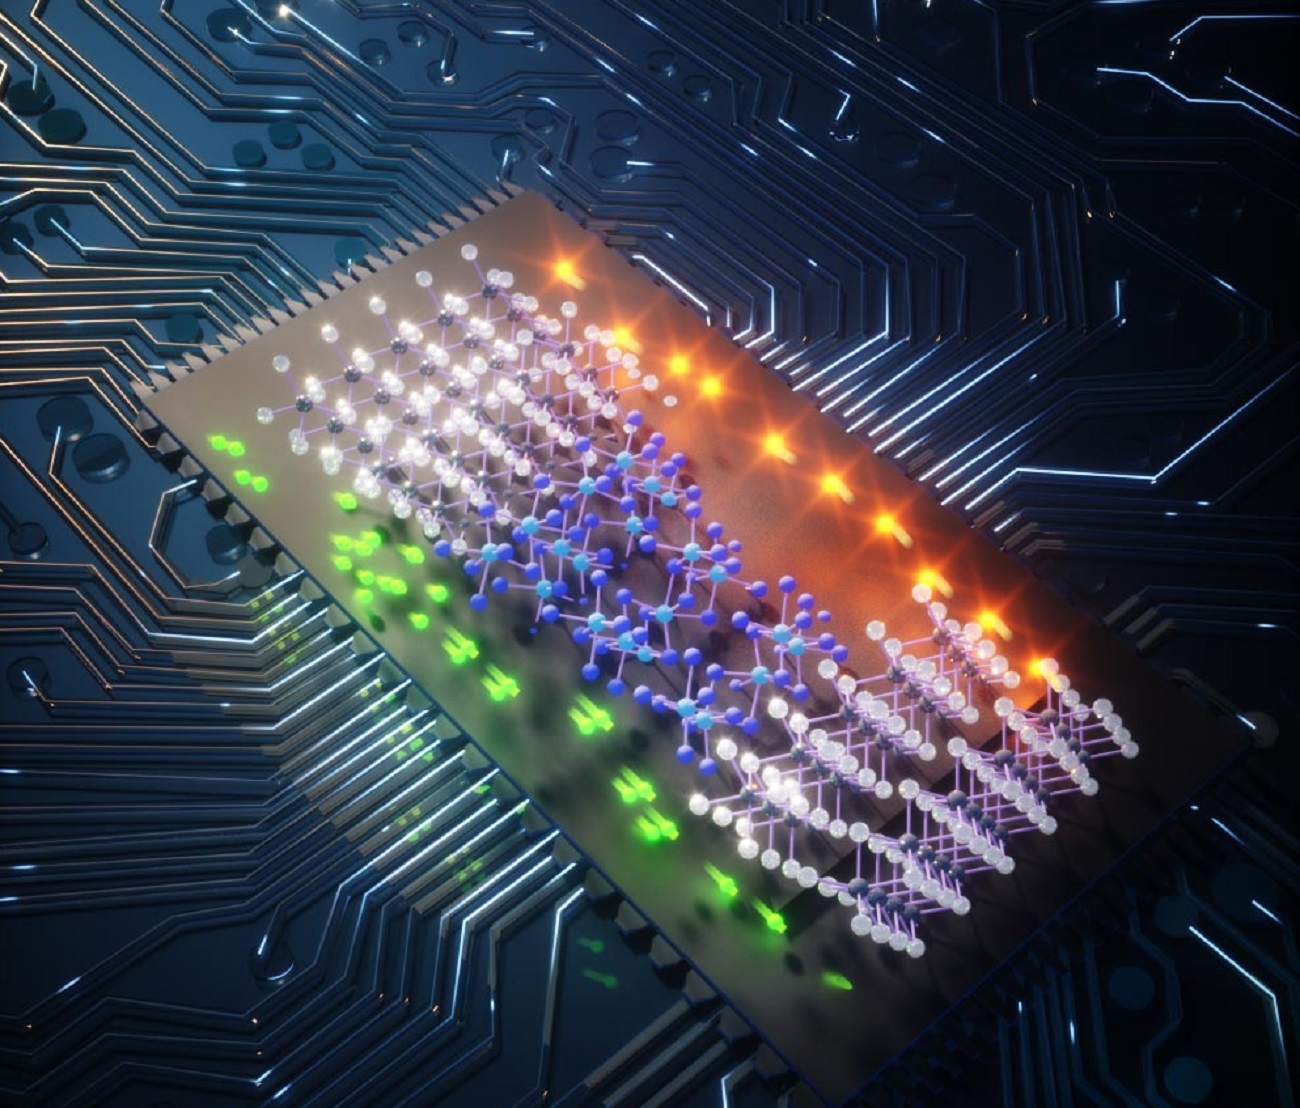 Nowy nadprzewodnik przyspieszy komputery kwantowe 400 razy. Jego twórca przewiduje wiek nadprzewodników